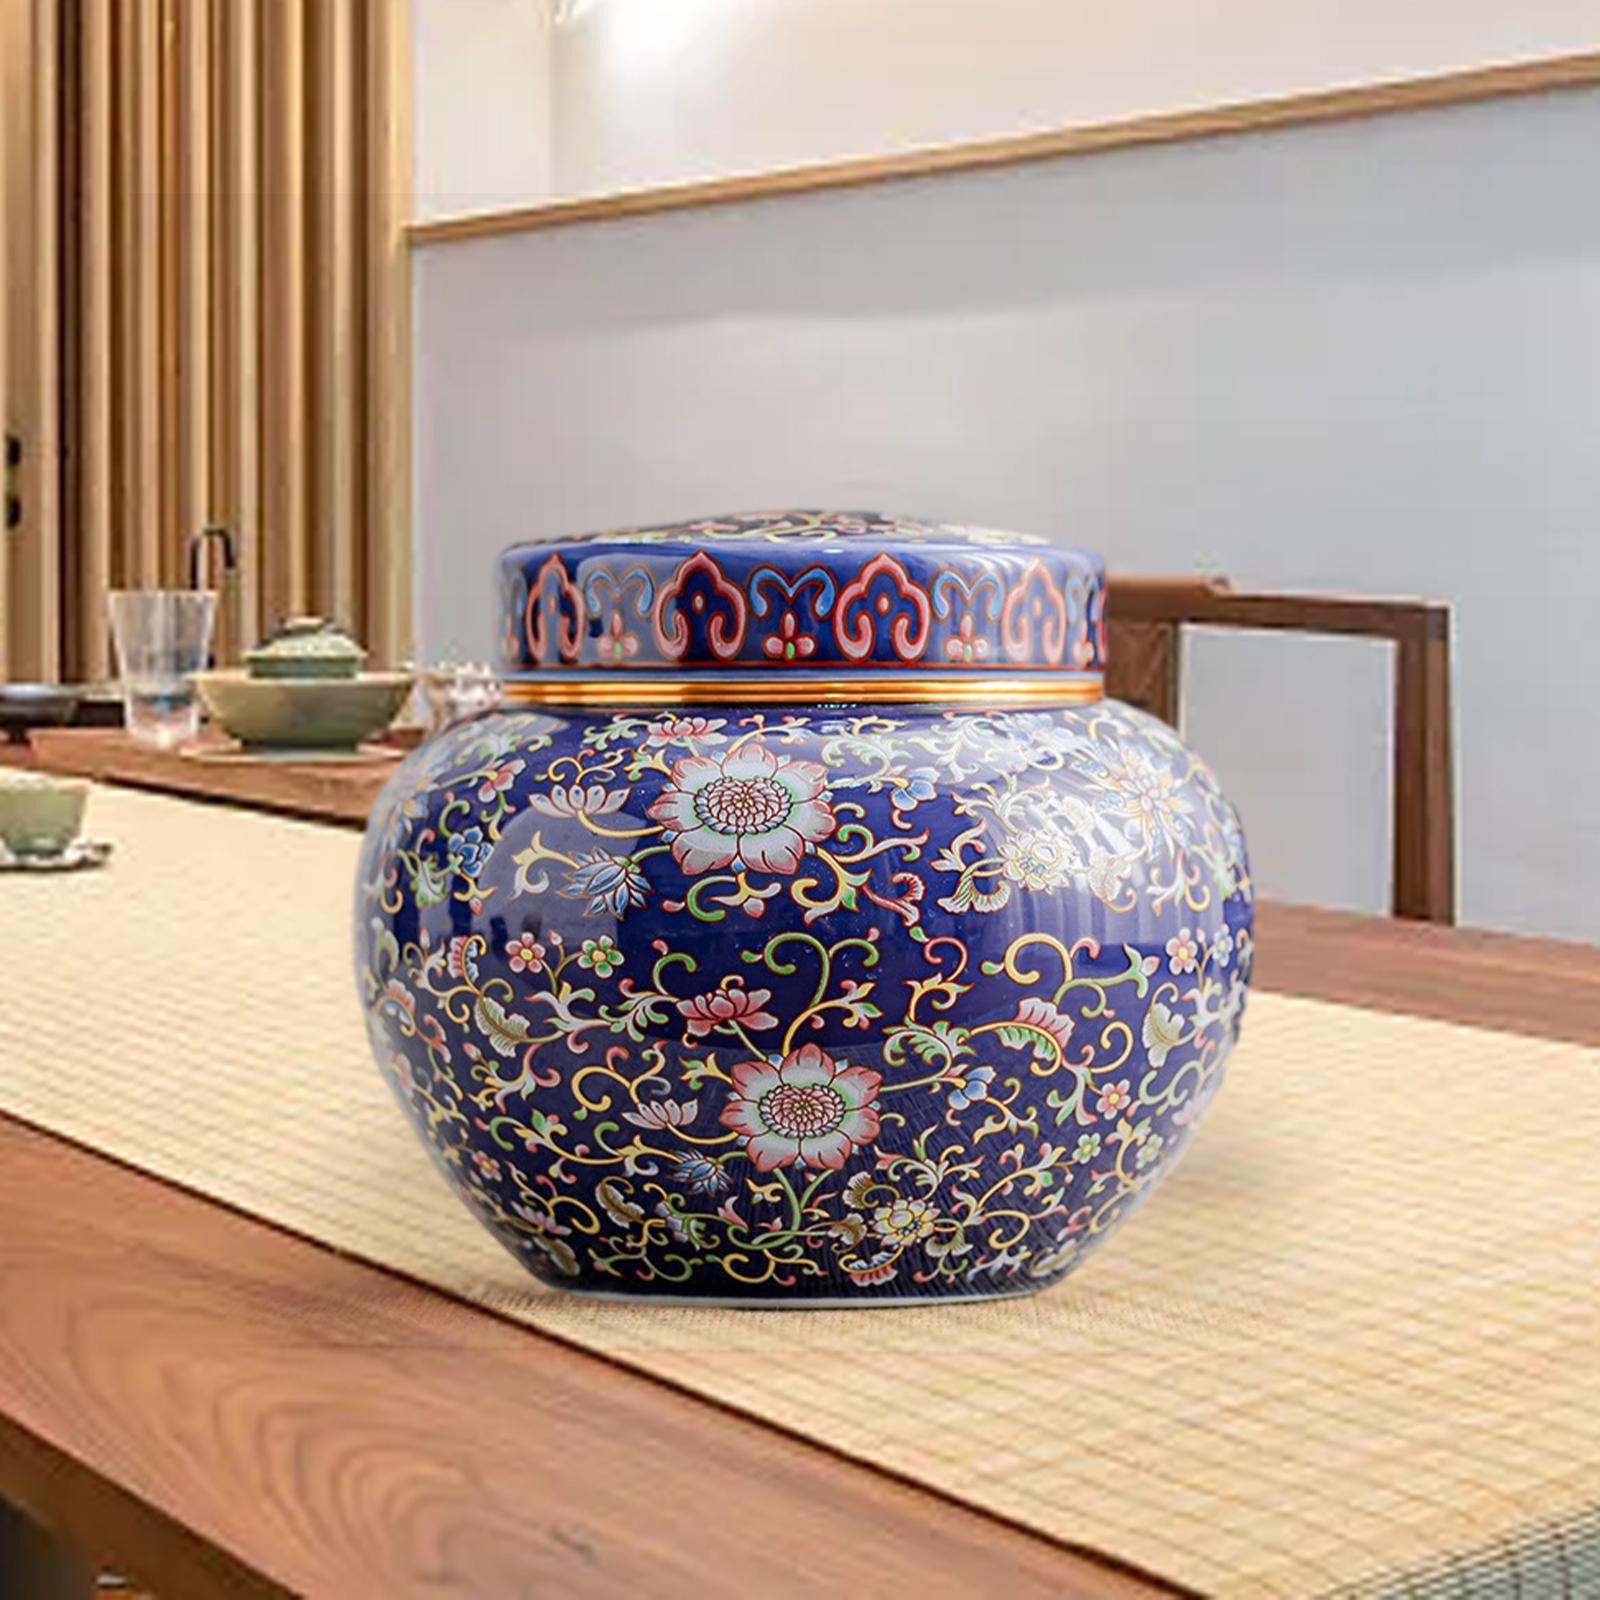 Ceramic Ginger Jar with Lid Craft Flower Vase for Office Bedroom Dining Room